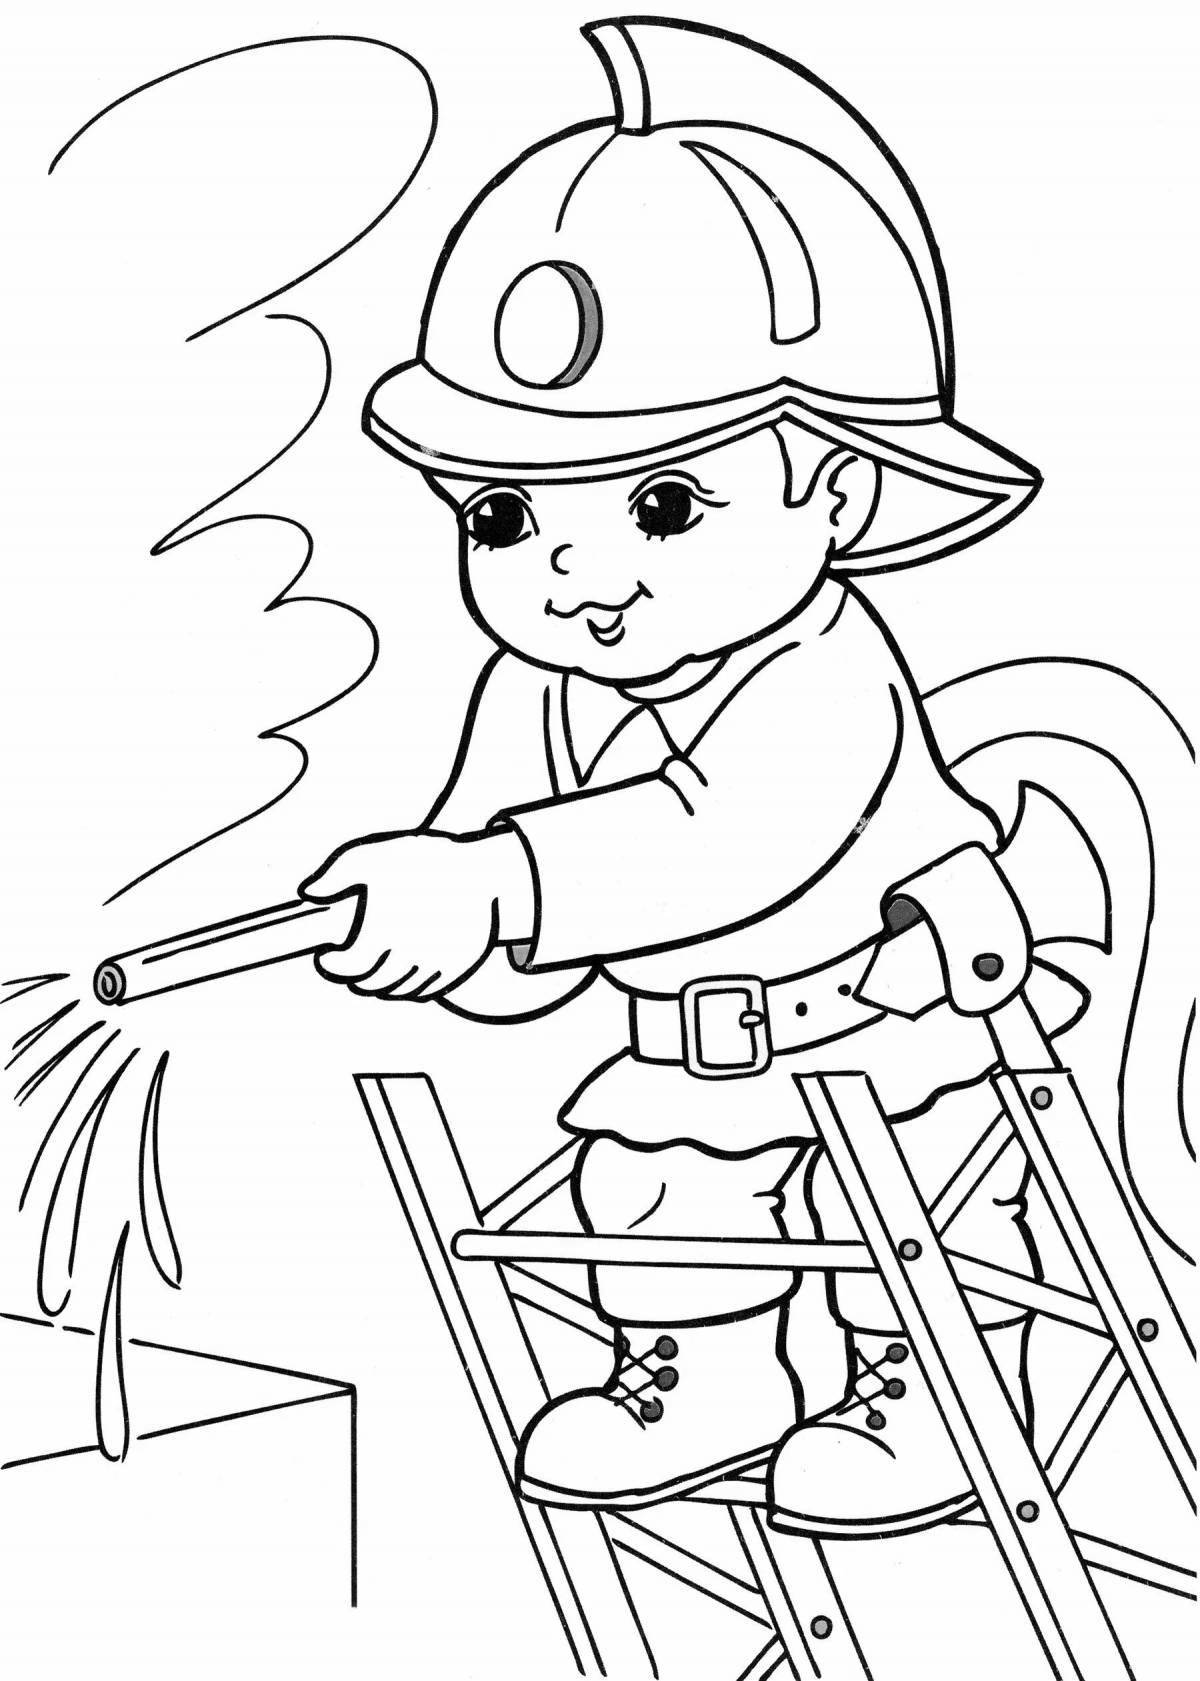 Захватывающая раскраска пожарного для детей